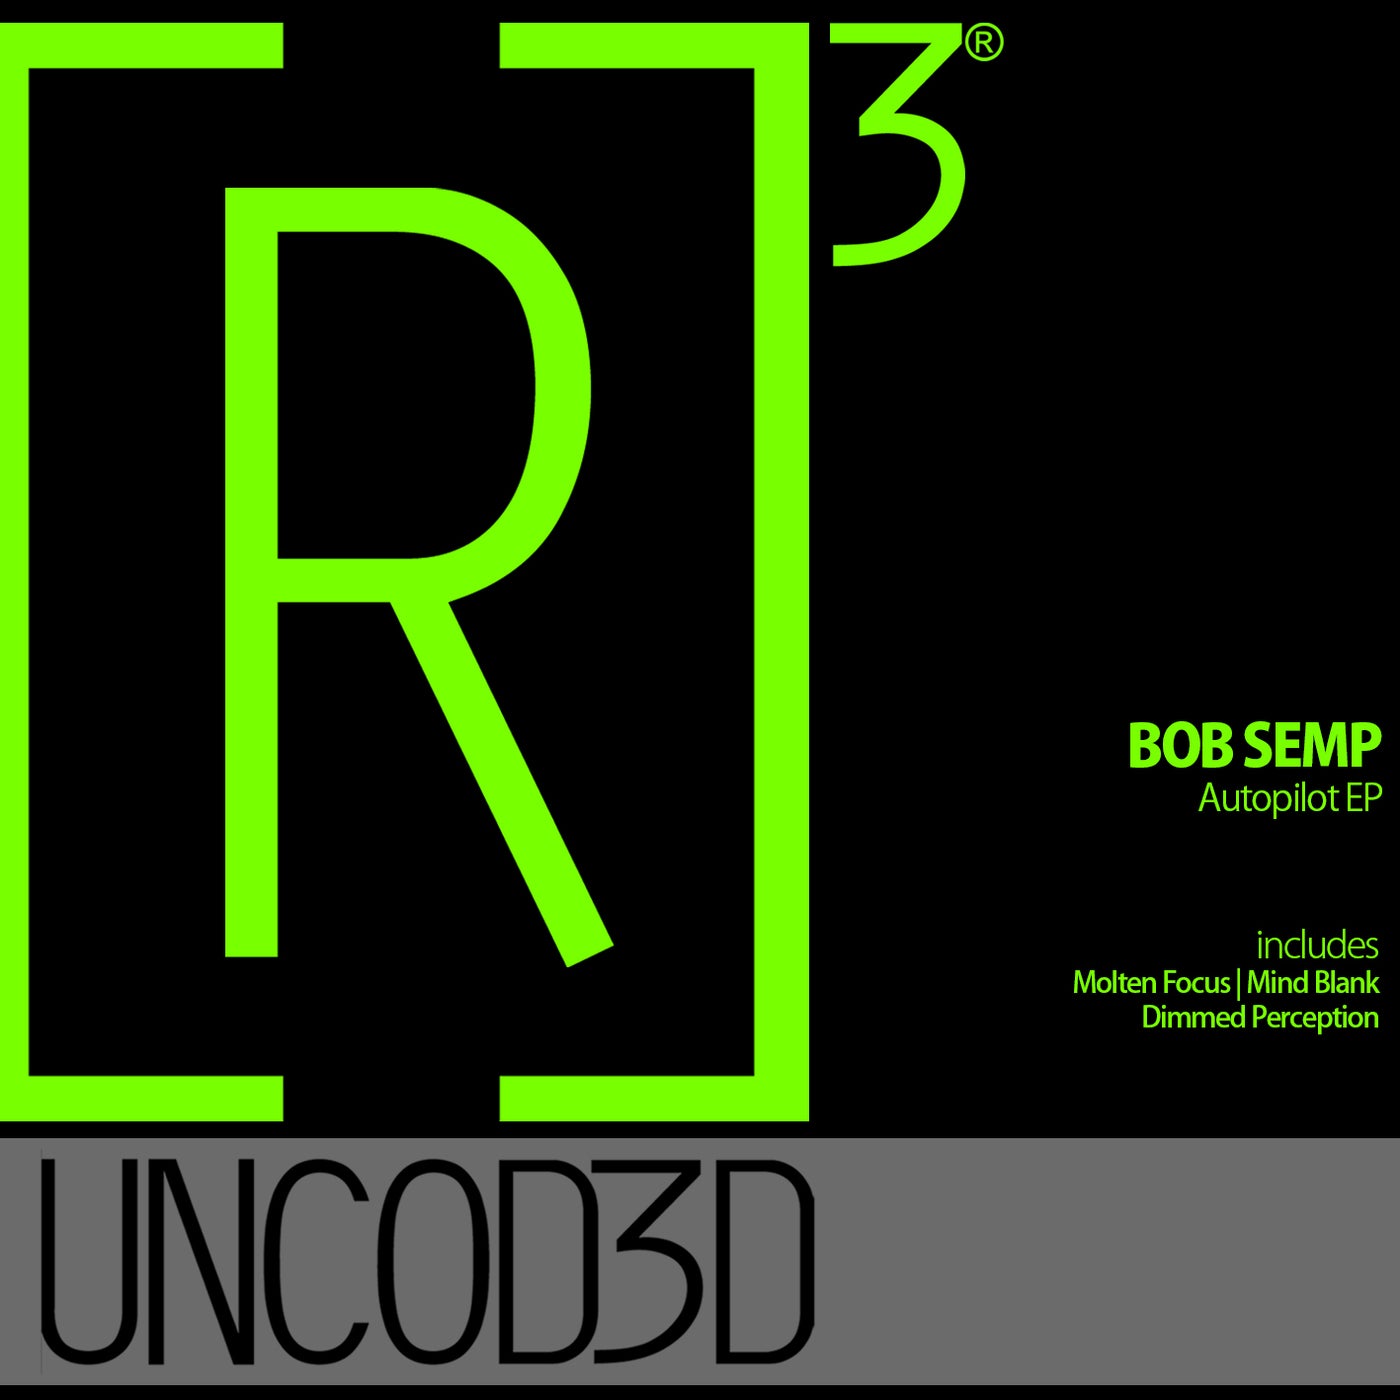 image cover: Bob Semp - Autopilot EP on [R]3volution Uncod3d